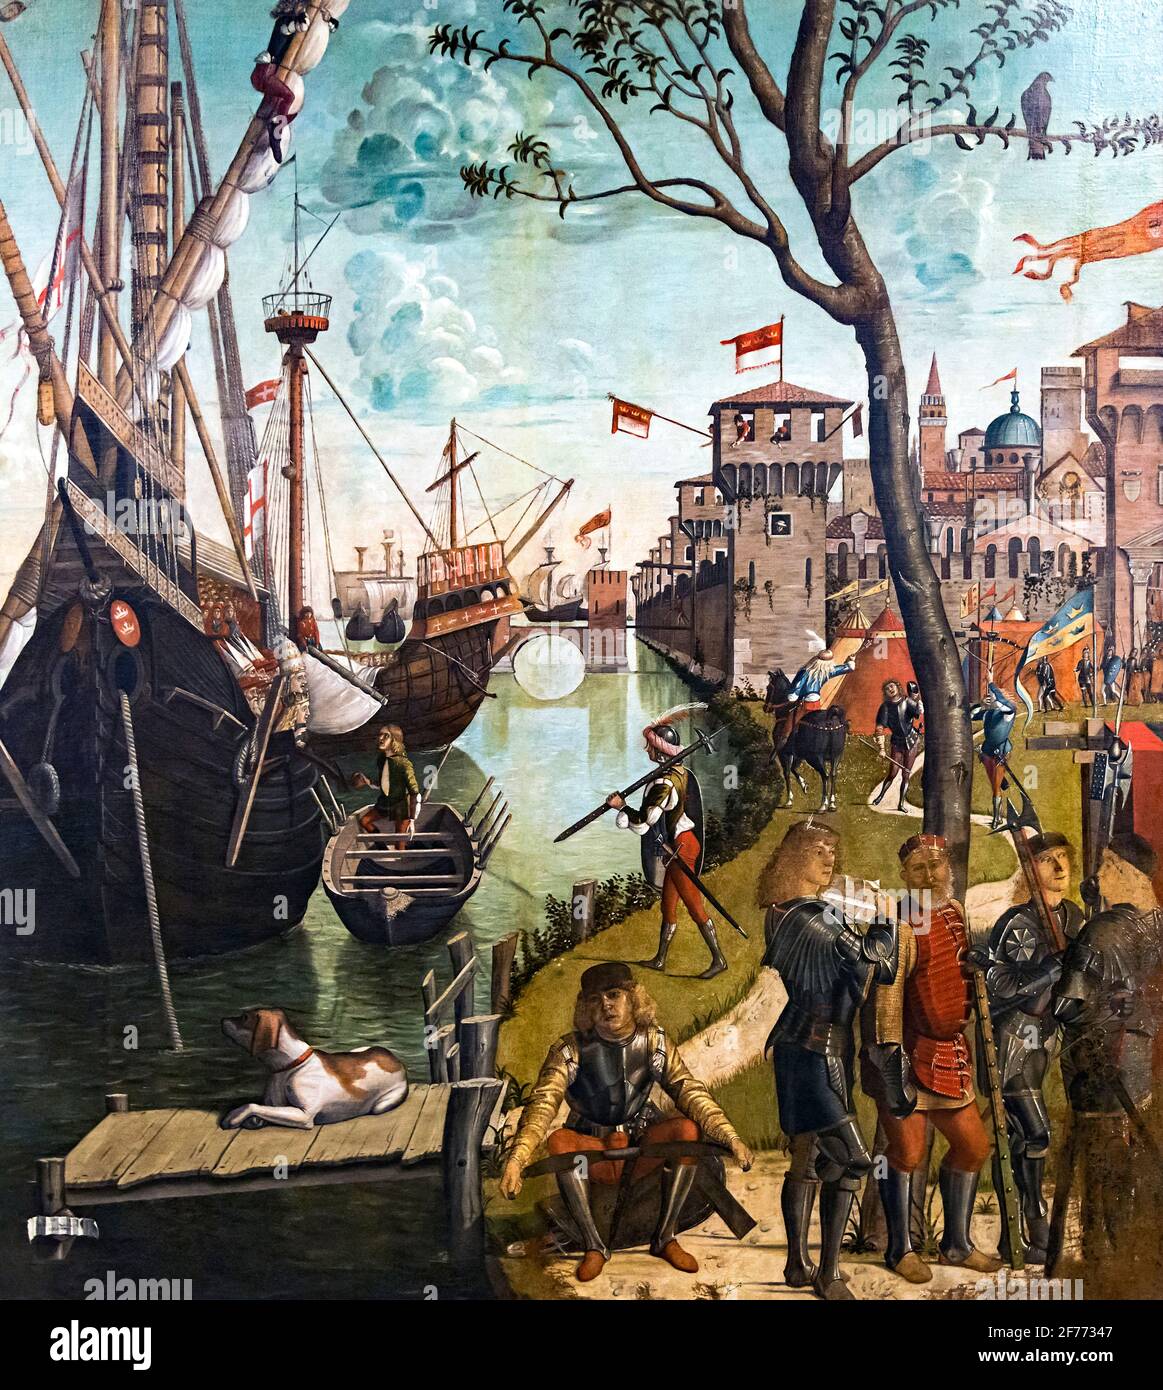 Arrivée des pèlerins à Cologne, partie de la légende de Saint Ursula, par le peintre italien Vittore Carpaccio (c. 1465-1525/1526), tempera sur toile, c. 1490 Banque D'Images